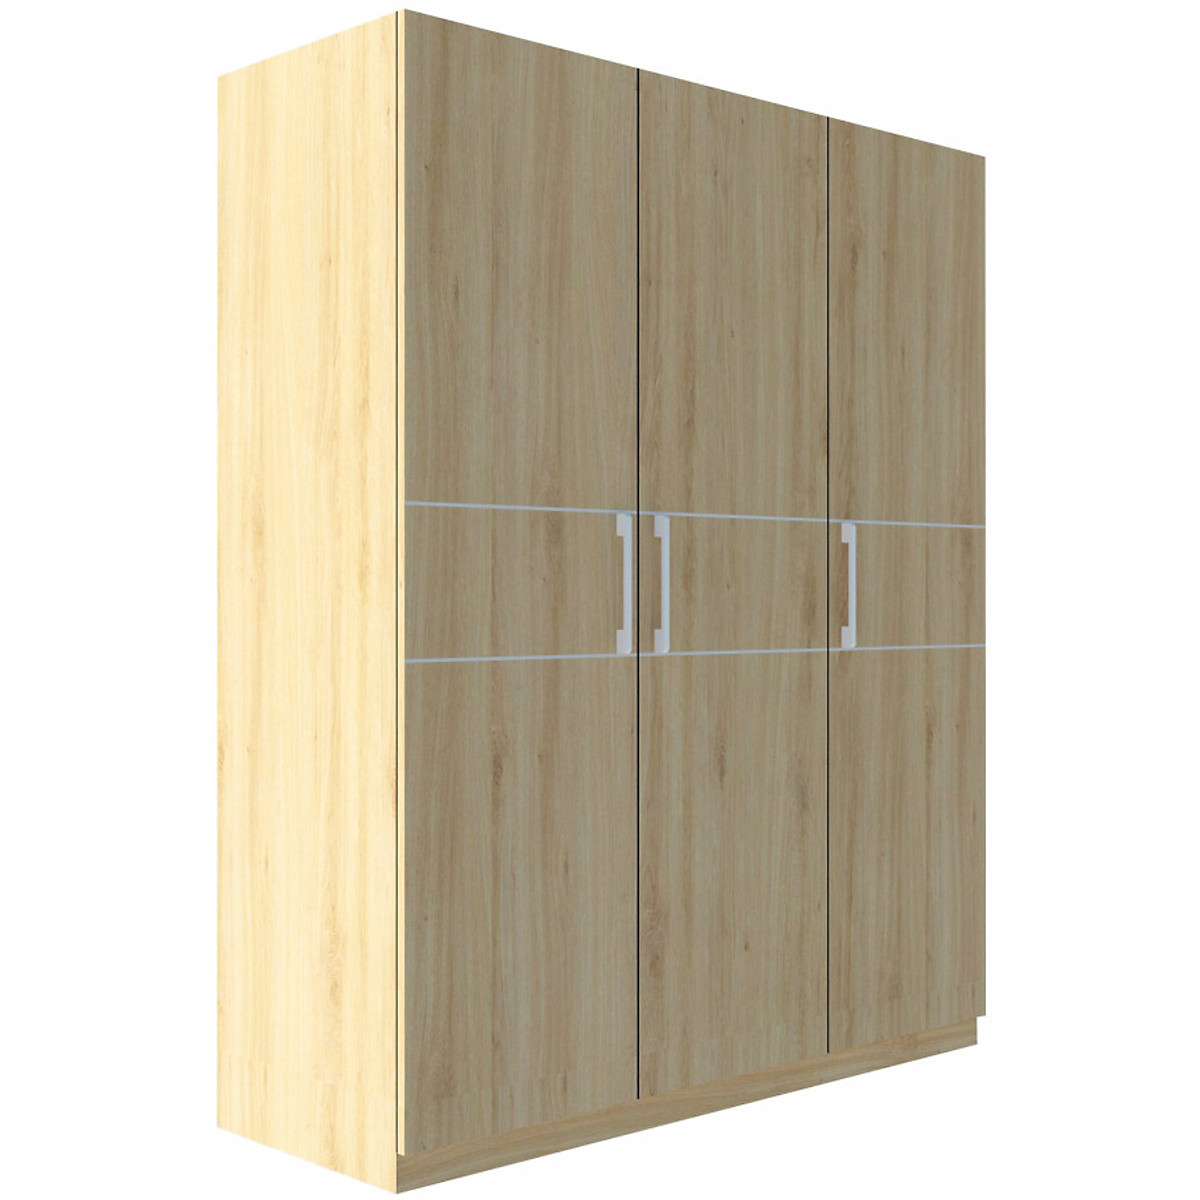 Tủ quần áo gỗ MDF Tundo 3 cánh 2 ngăn kéo màu vàng nhạt 120 x 55 x 200cm